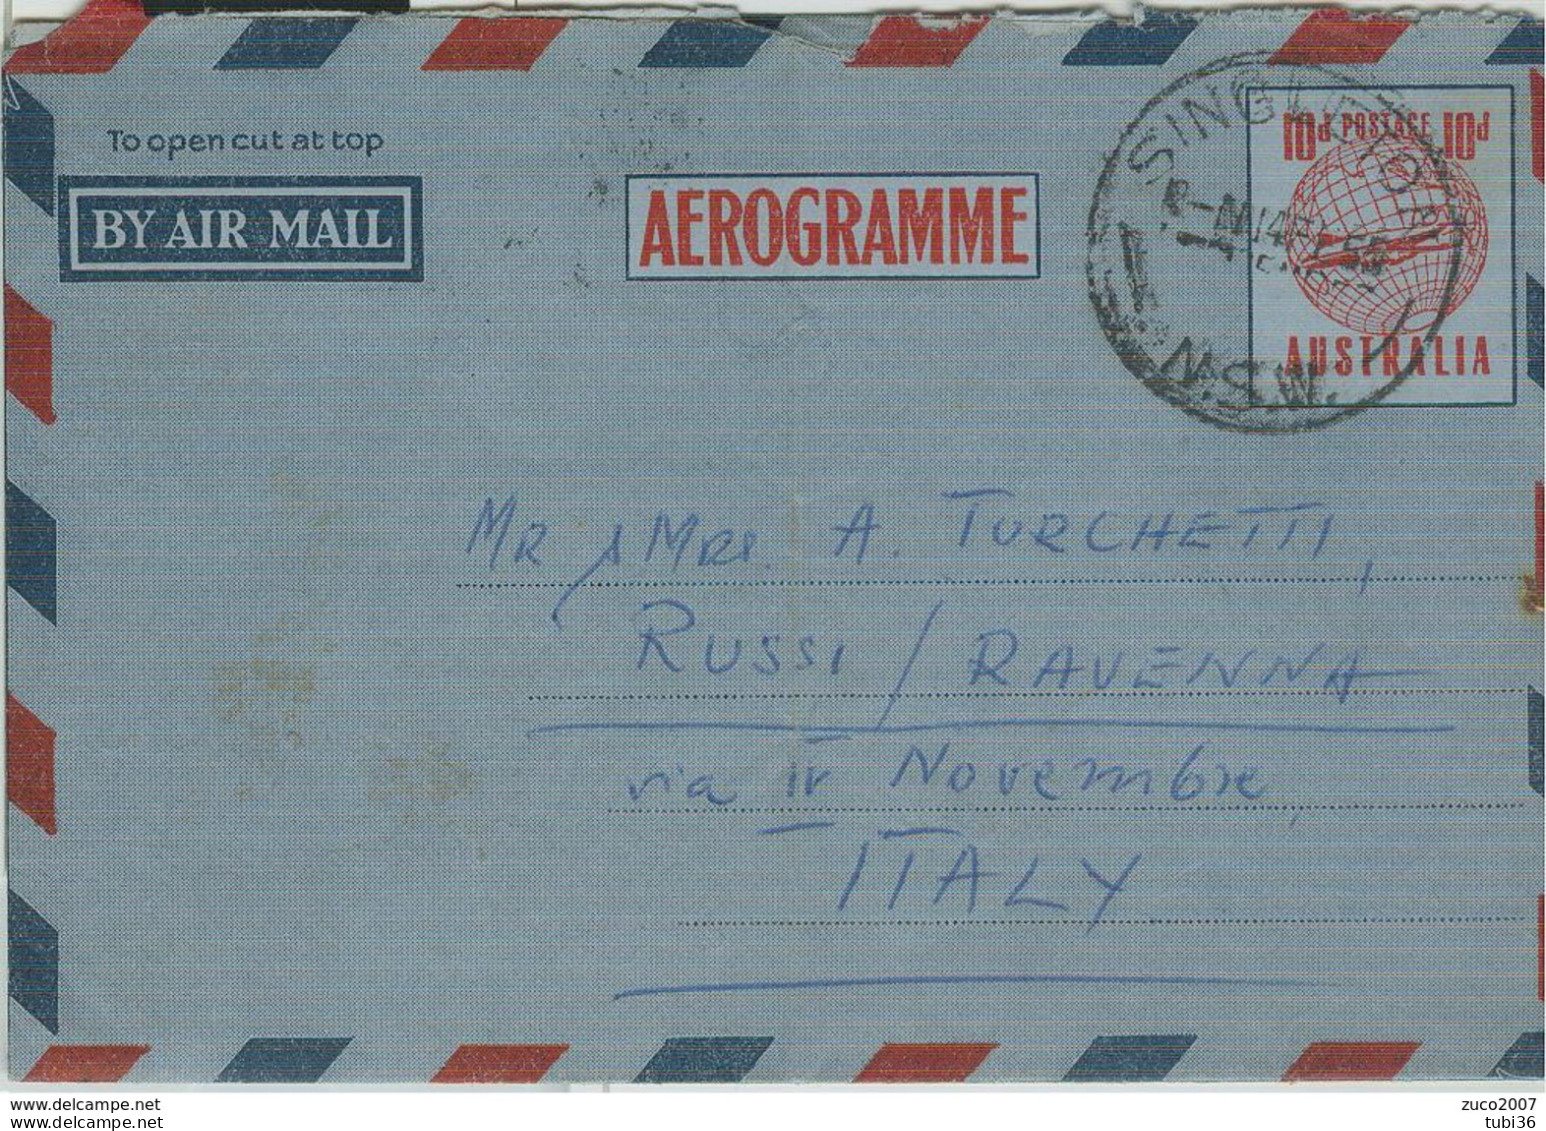 AUSTRALIA-AEROGRAMME- STAMPING SINGLETON, FOR ITALY, 1955, - Aerogrammi